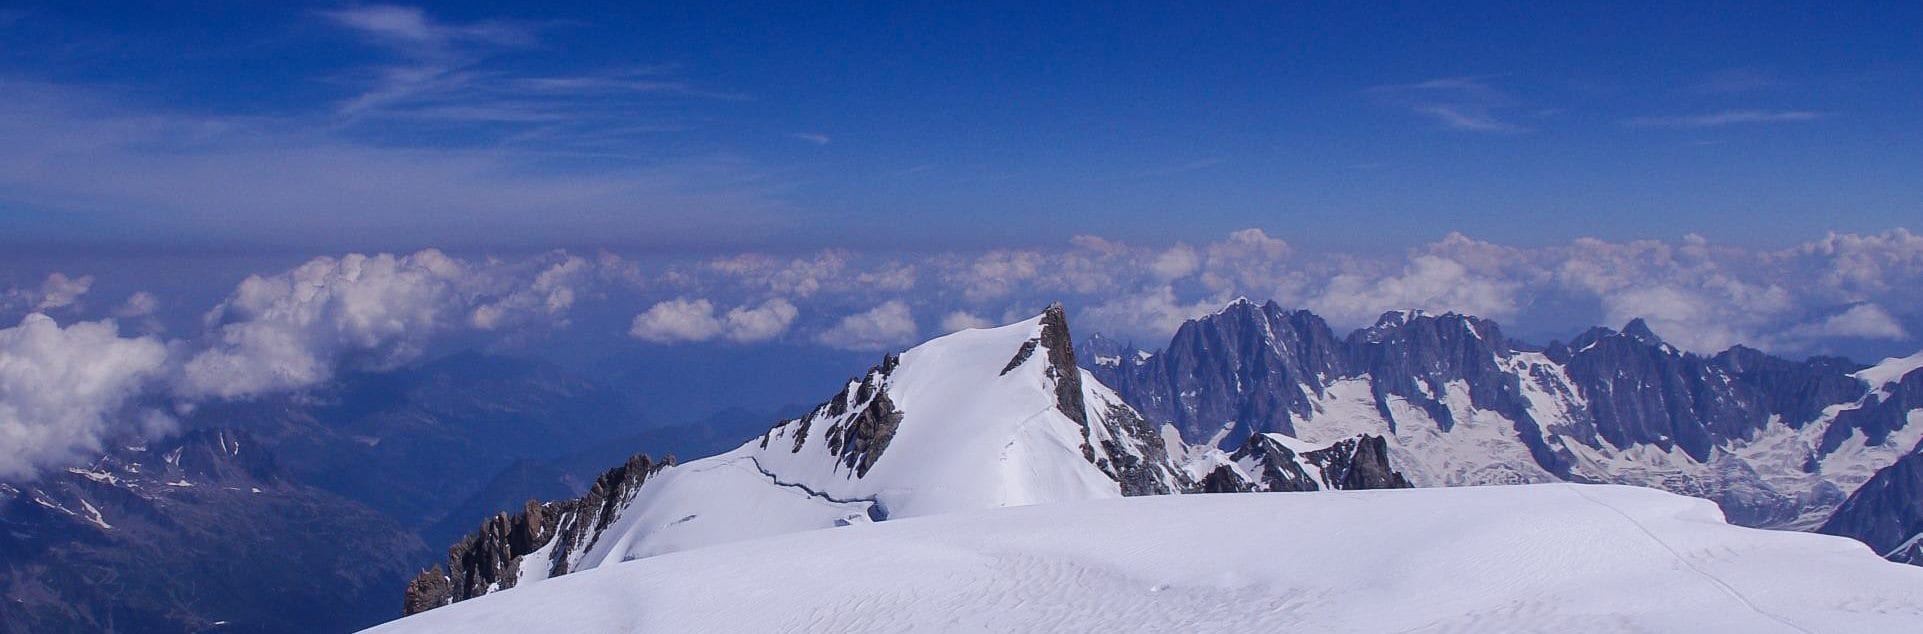 Mont Blanc Szczyt 4810 M N P M Gory I Ludzie